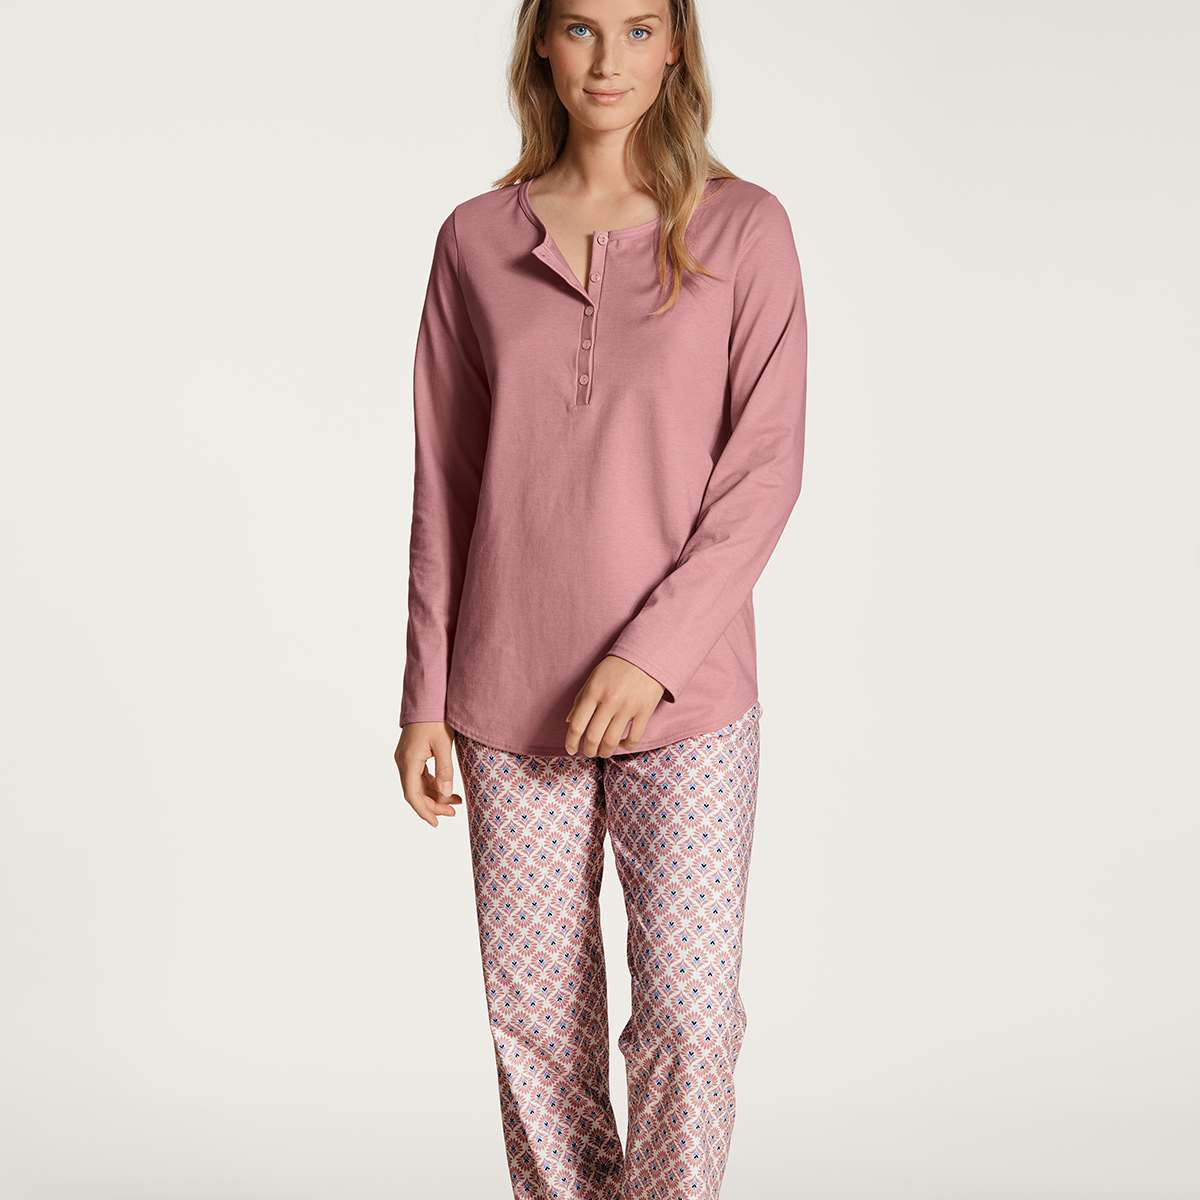 Billede af Calida Pyjamas, Farve: Rose Bud, Størrelse: L, Dame hos Netlingeri.dk